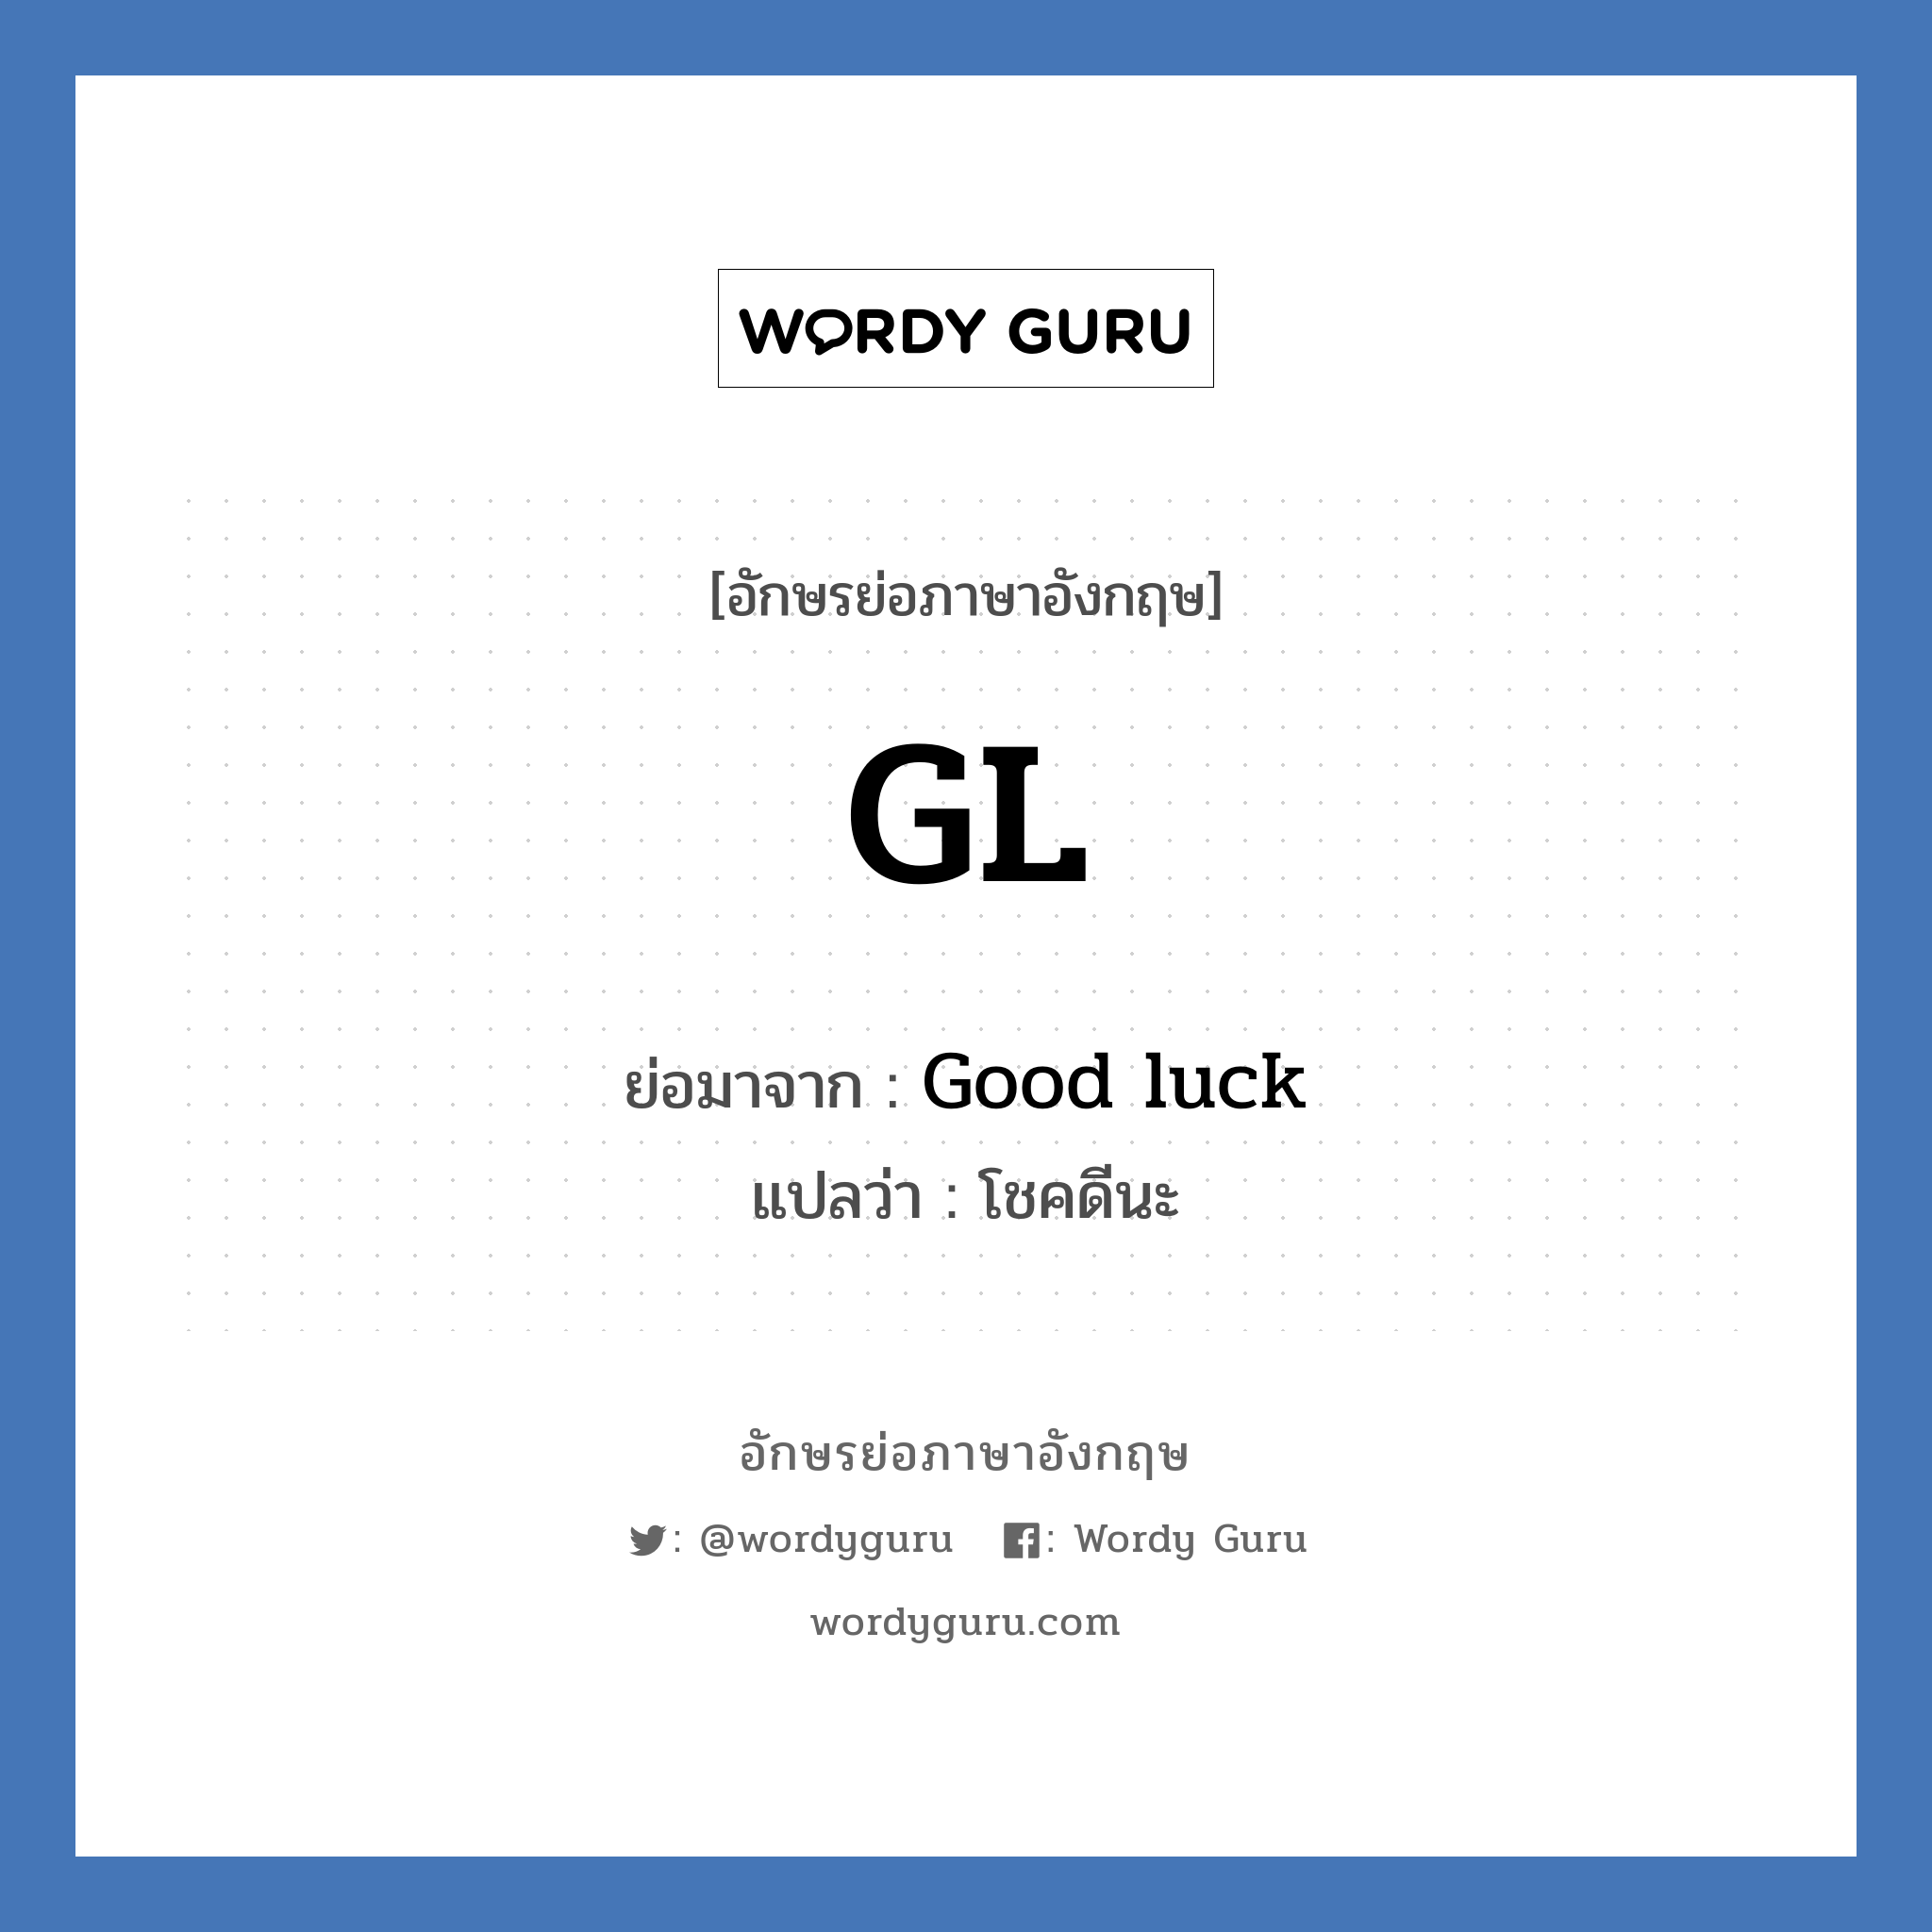 GL ย่อมาจาก? แปลว่า?, อักษรย่อภาษาอังกฤษ GL ย่อมาจาก Good luck แปลว่า โชคดีนะ